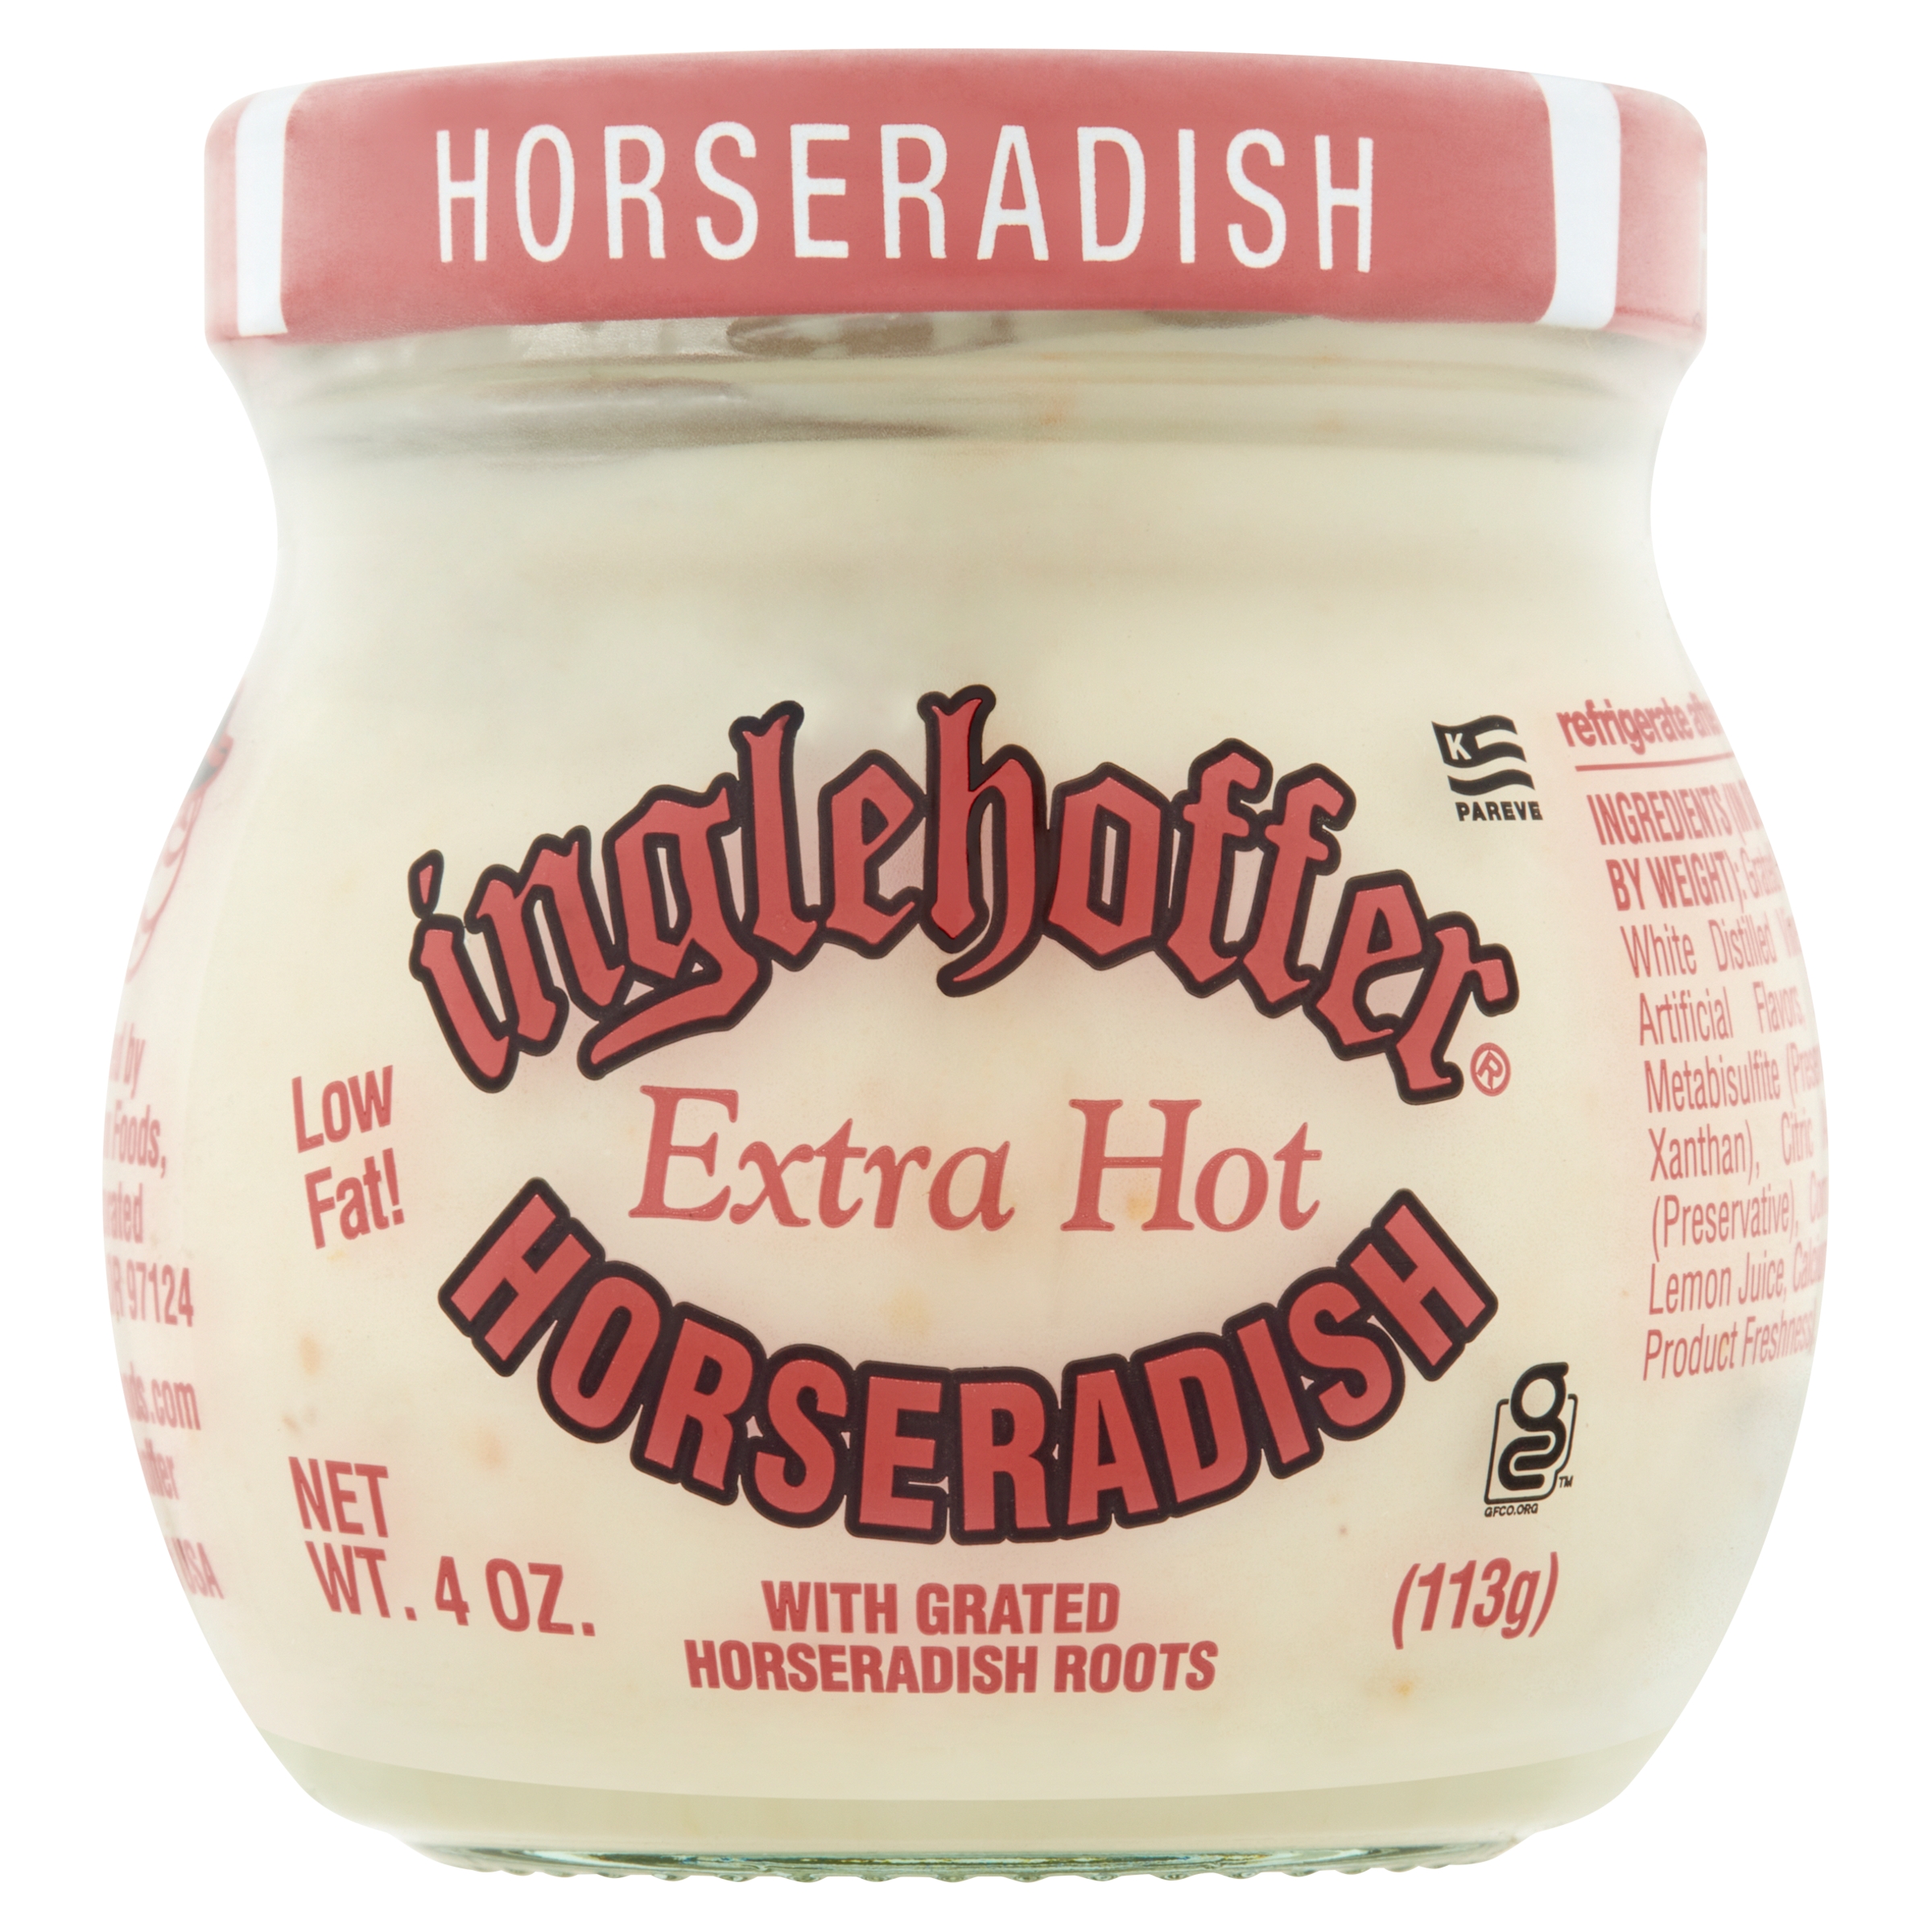 Inglehoffer Extra Hot Horseradish, 4 oz Jar - image 1 of 6